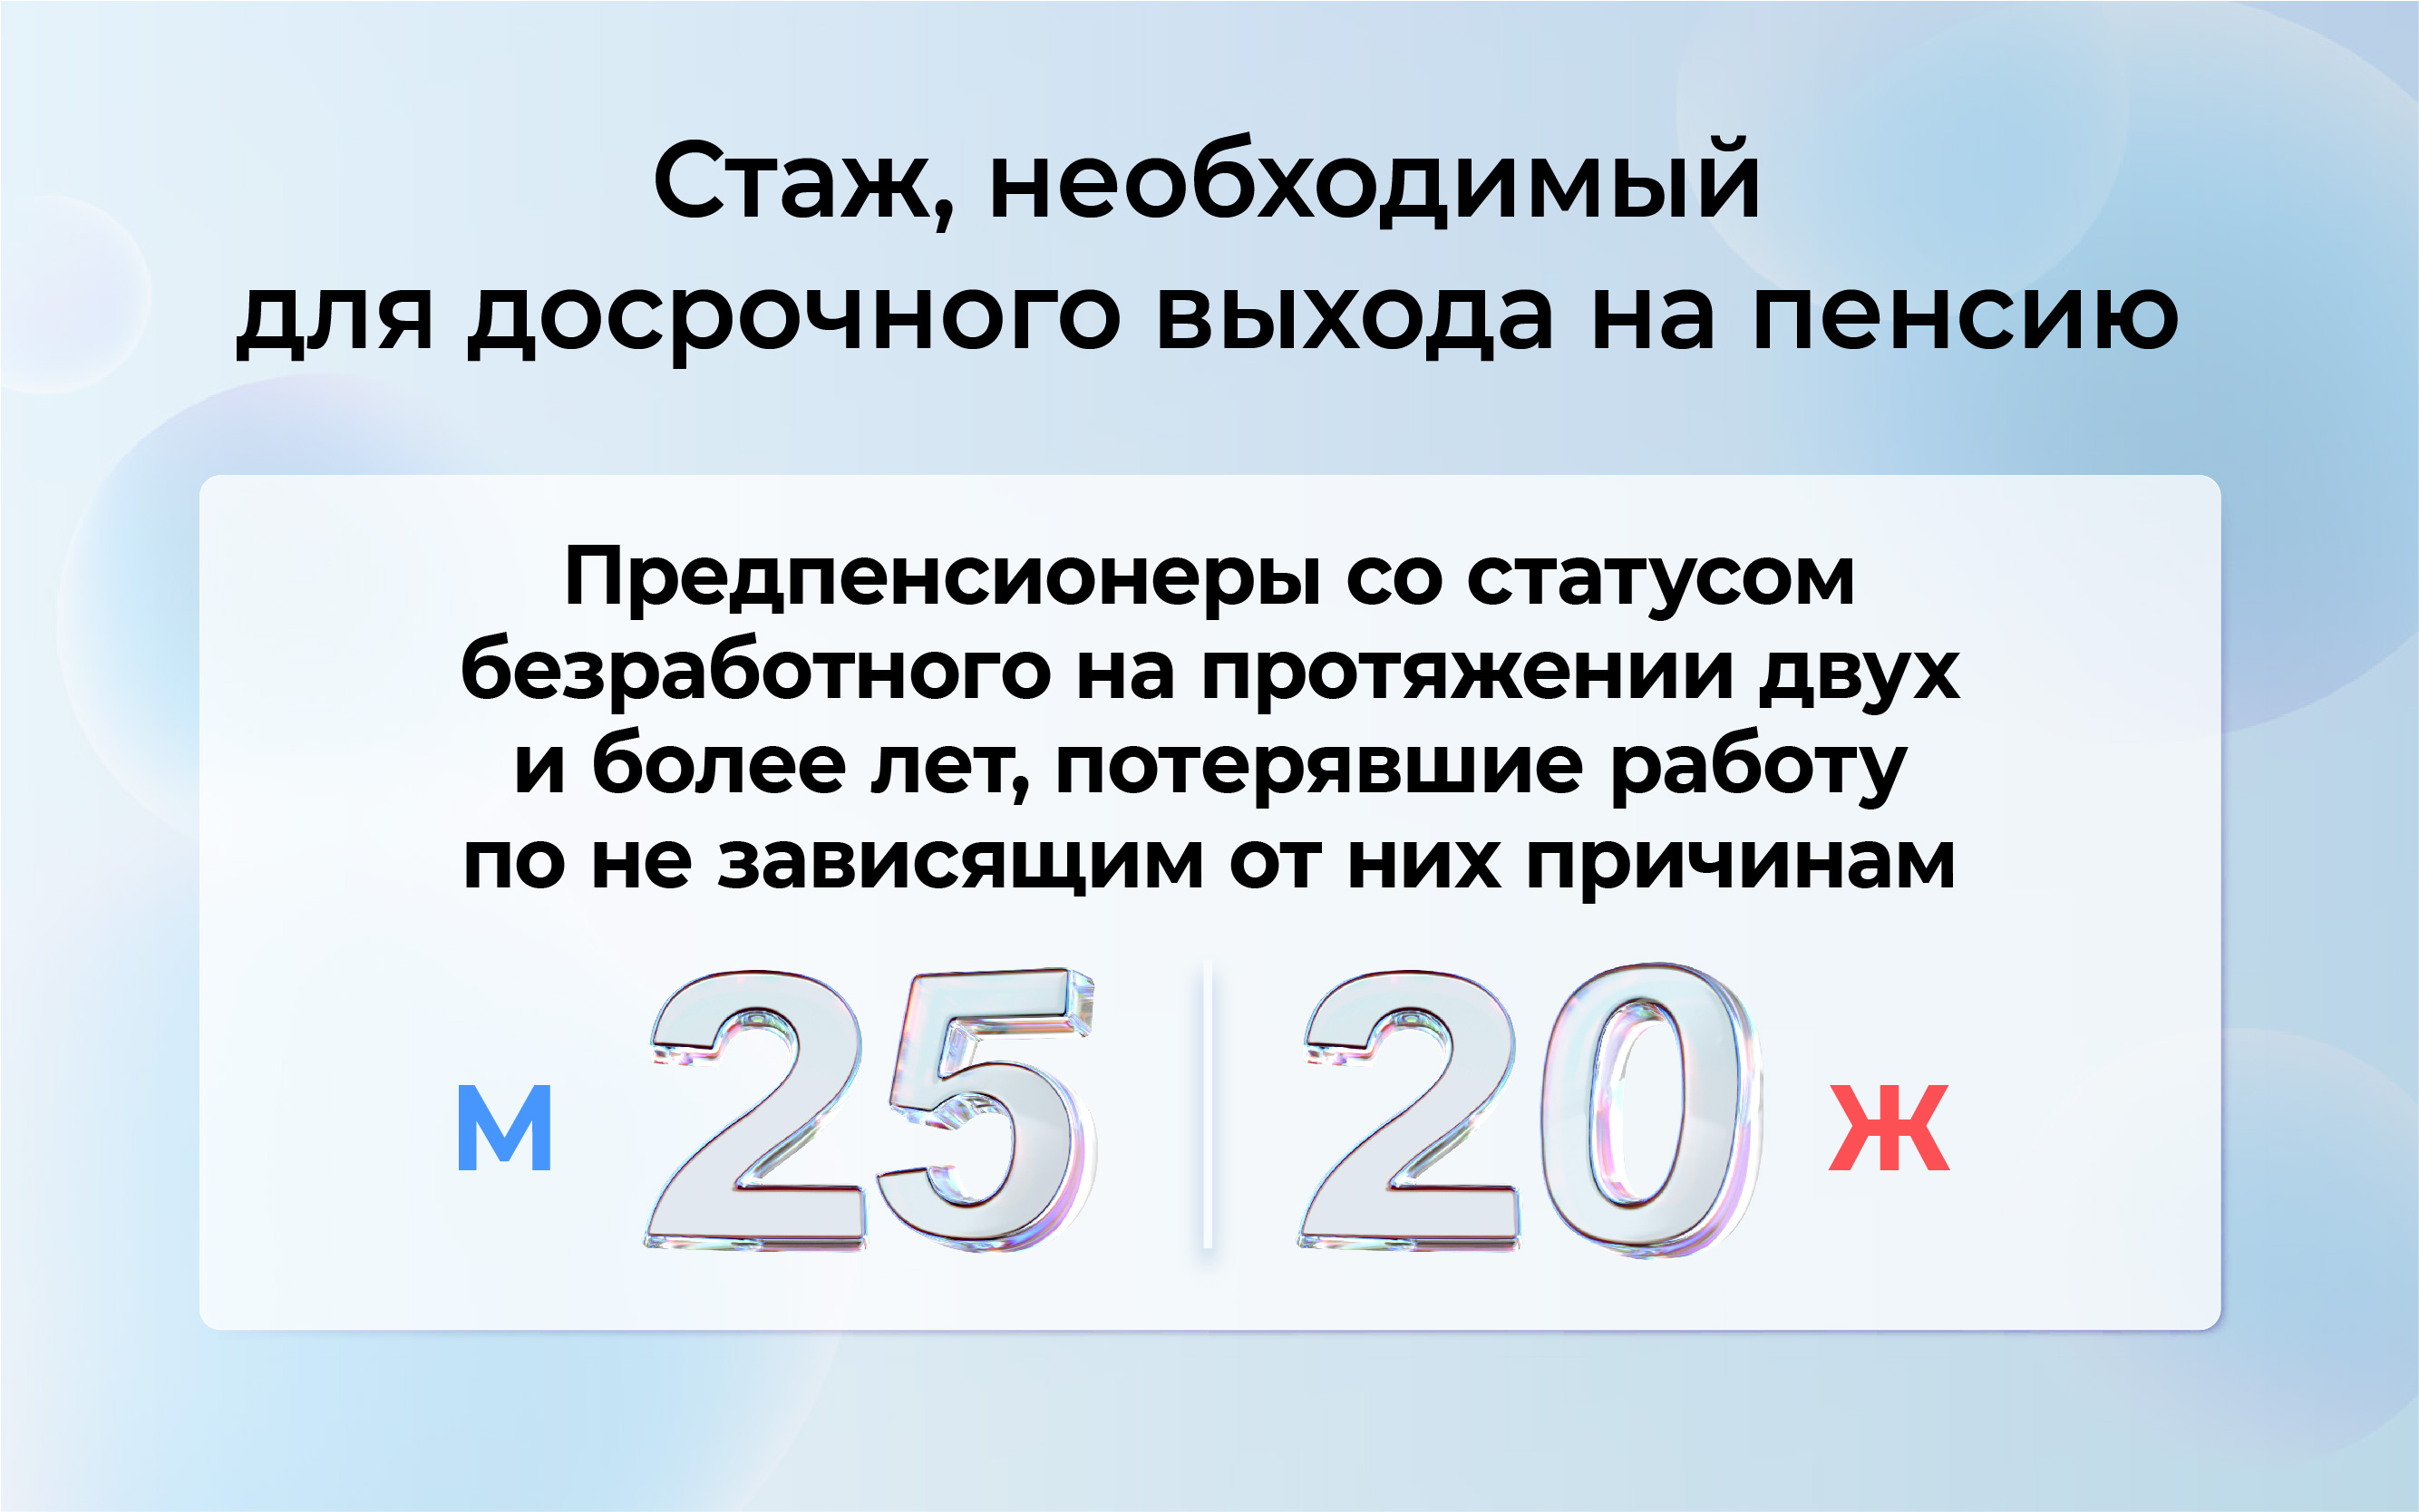 Сколько лет нужно работать для получения пенсии в 20 тысяч рублей и формирования пенсионных баллов